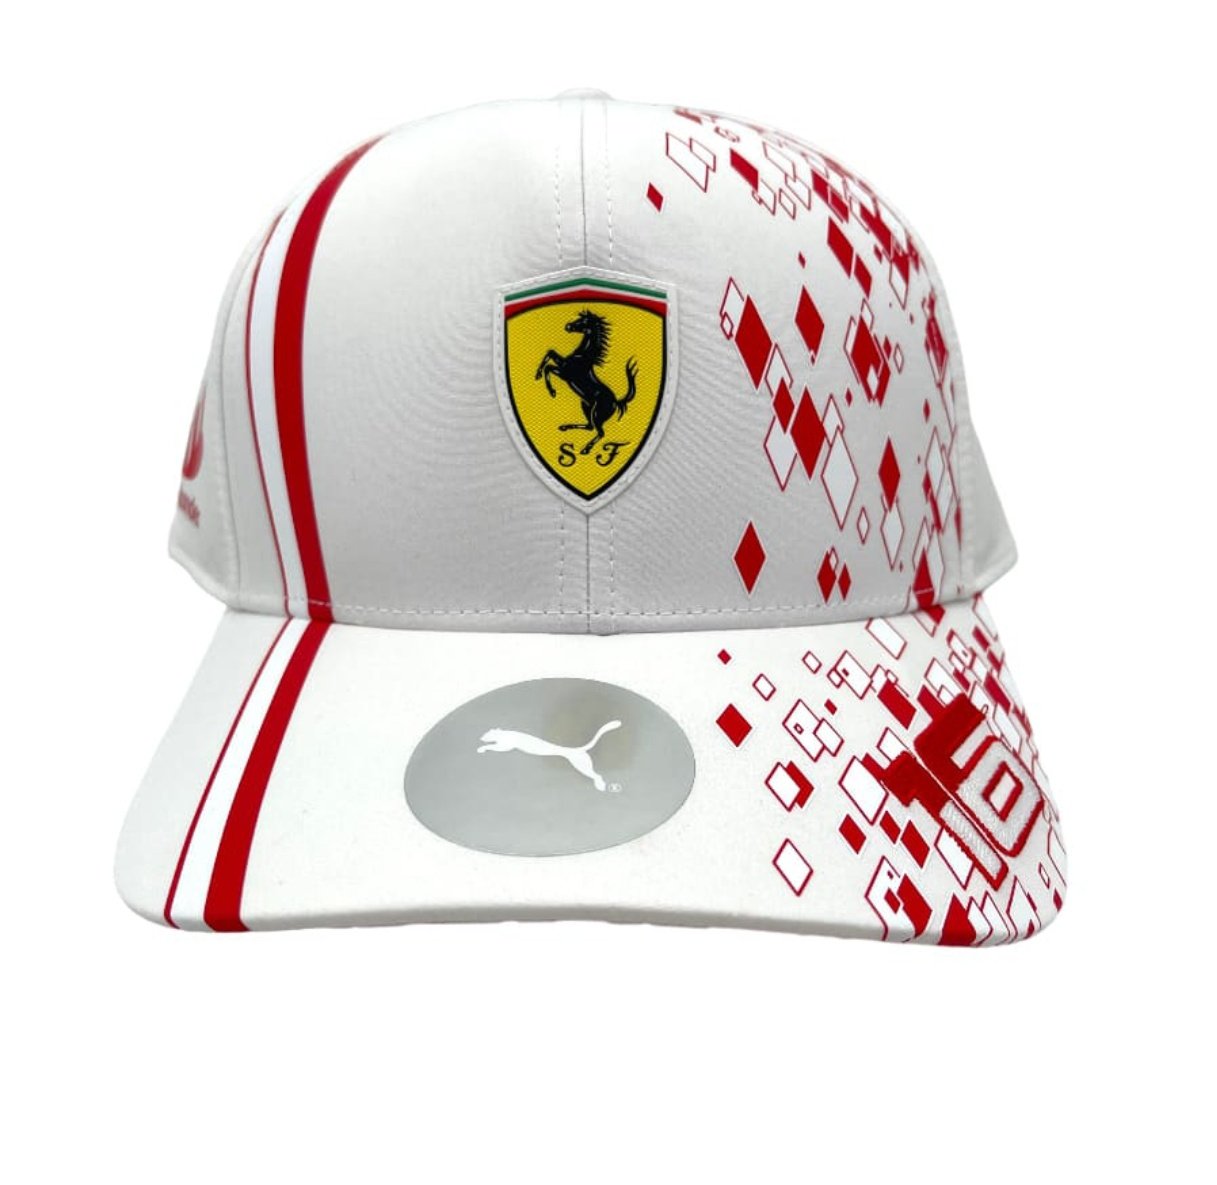 CL16__FanpageFr 🇲🇨 on X: La casquette de Ferrari special Charles Leclerc  pour le Grand Prix de Monaco ! 🥰🇲🇨 #F1 #Charles16 #MonacoGP   / X